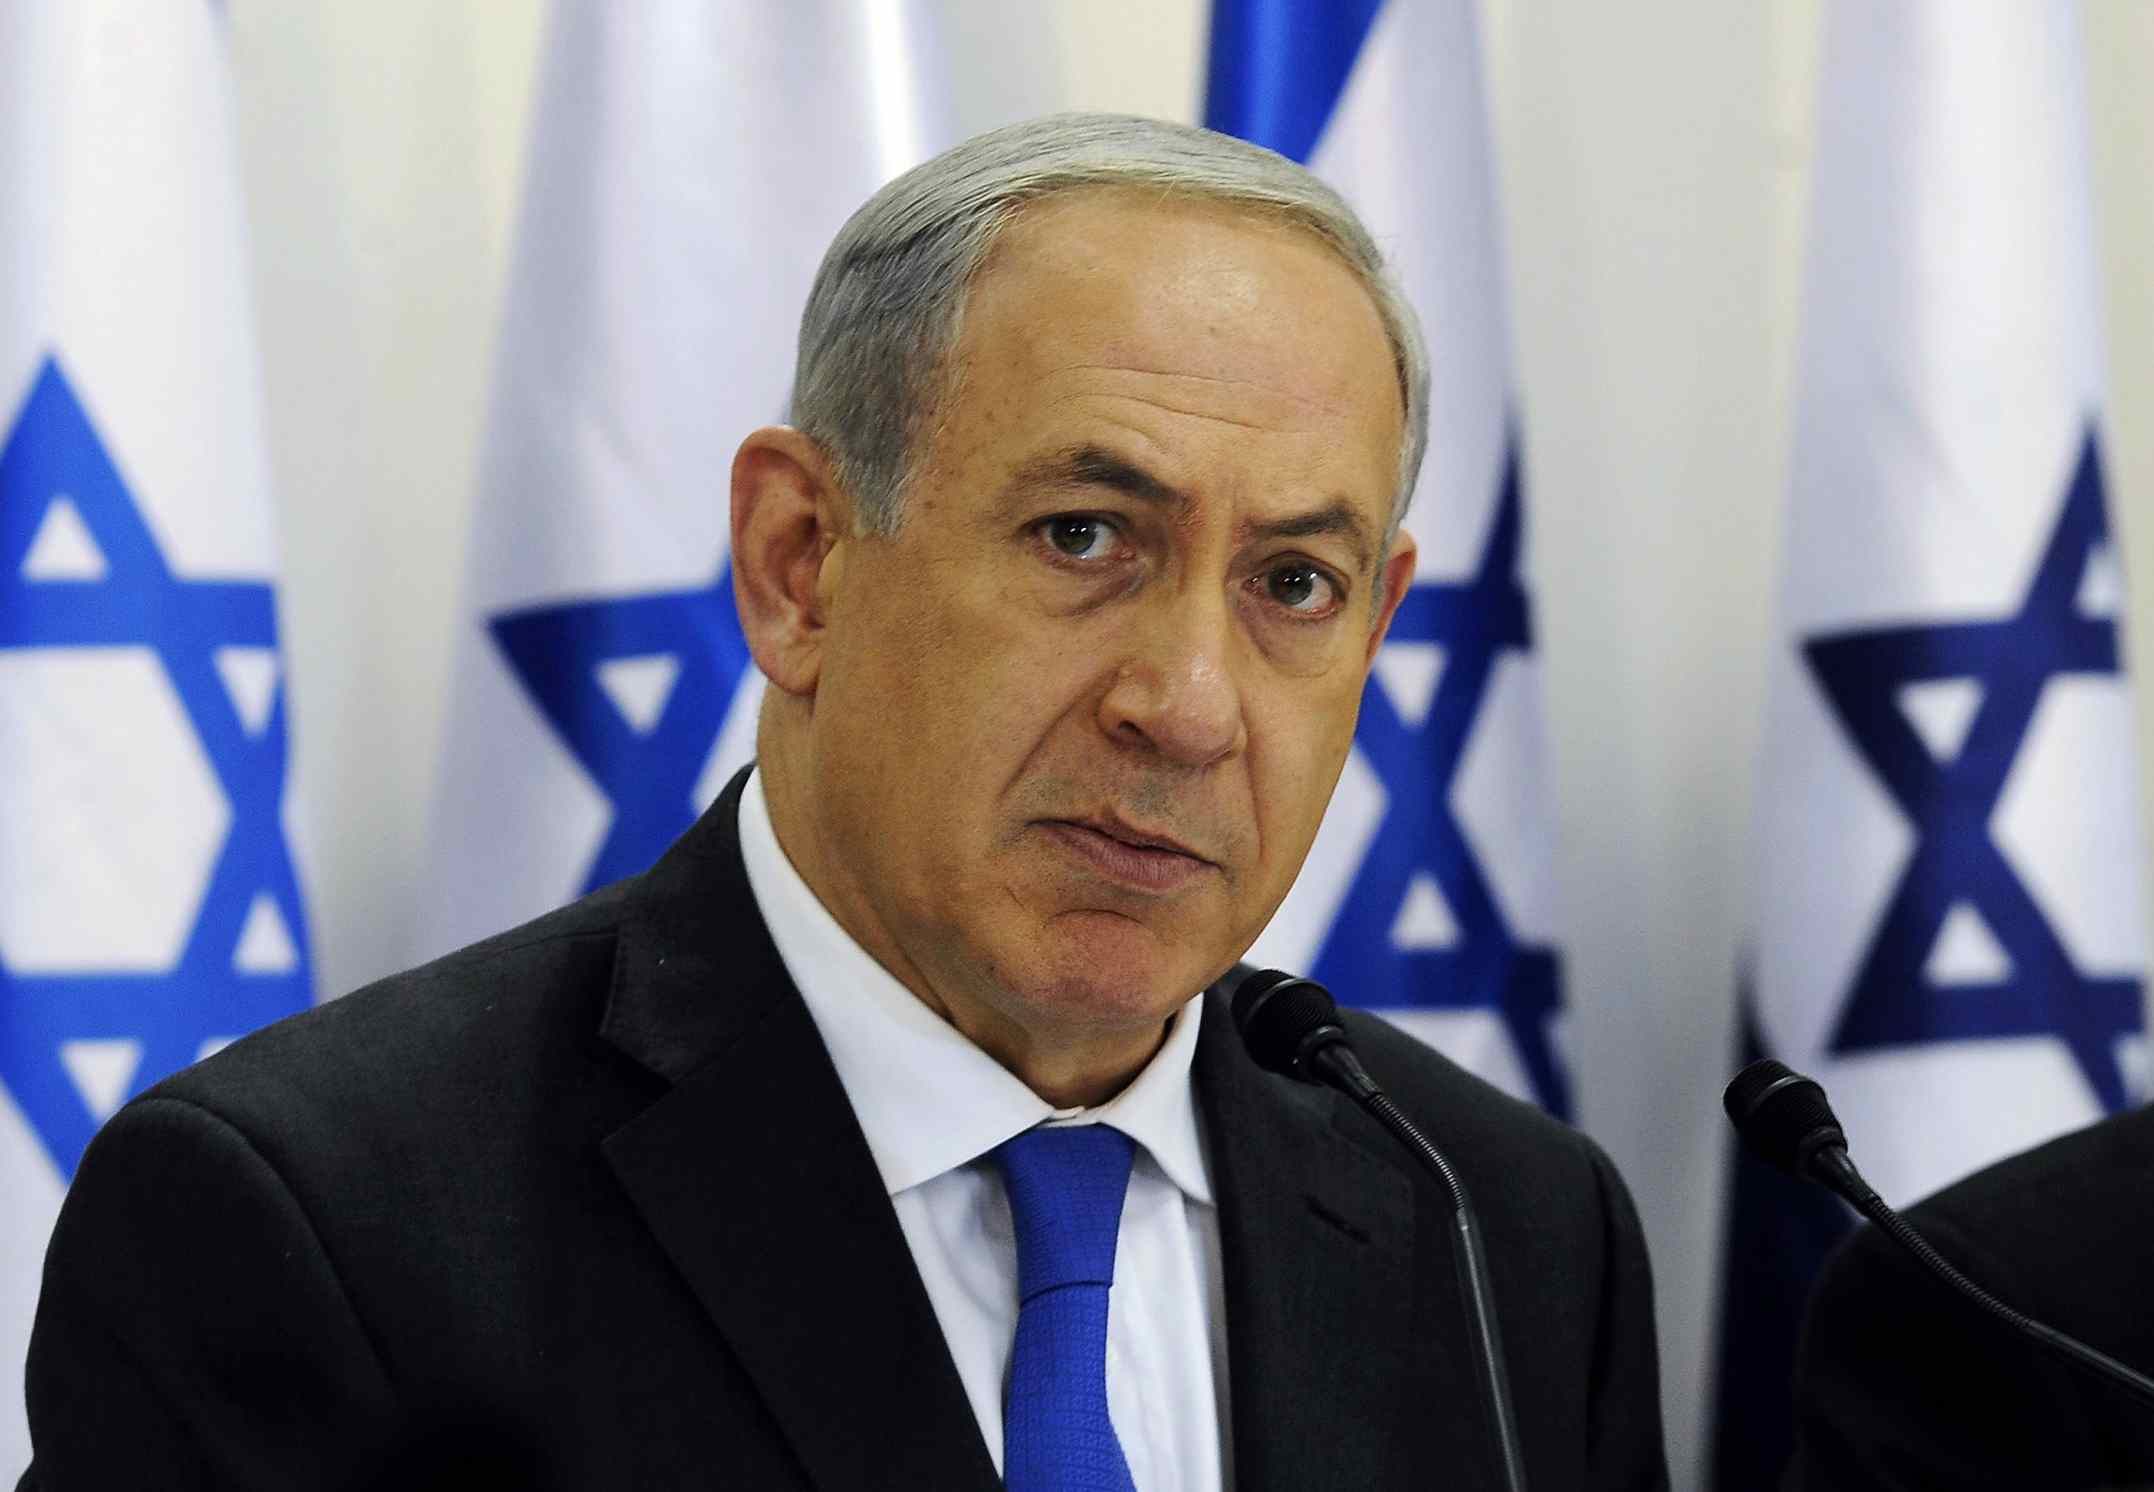 Benjamin Netanyahu explicó que mantuvo conversaciones con otros líderes que están planificando mover sus embajadas a la ciudad